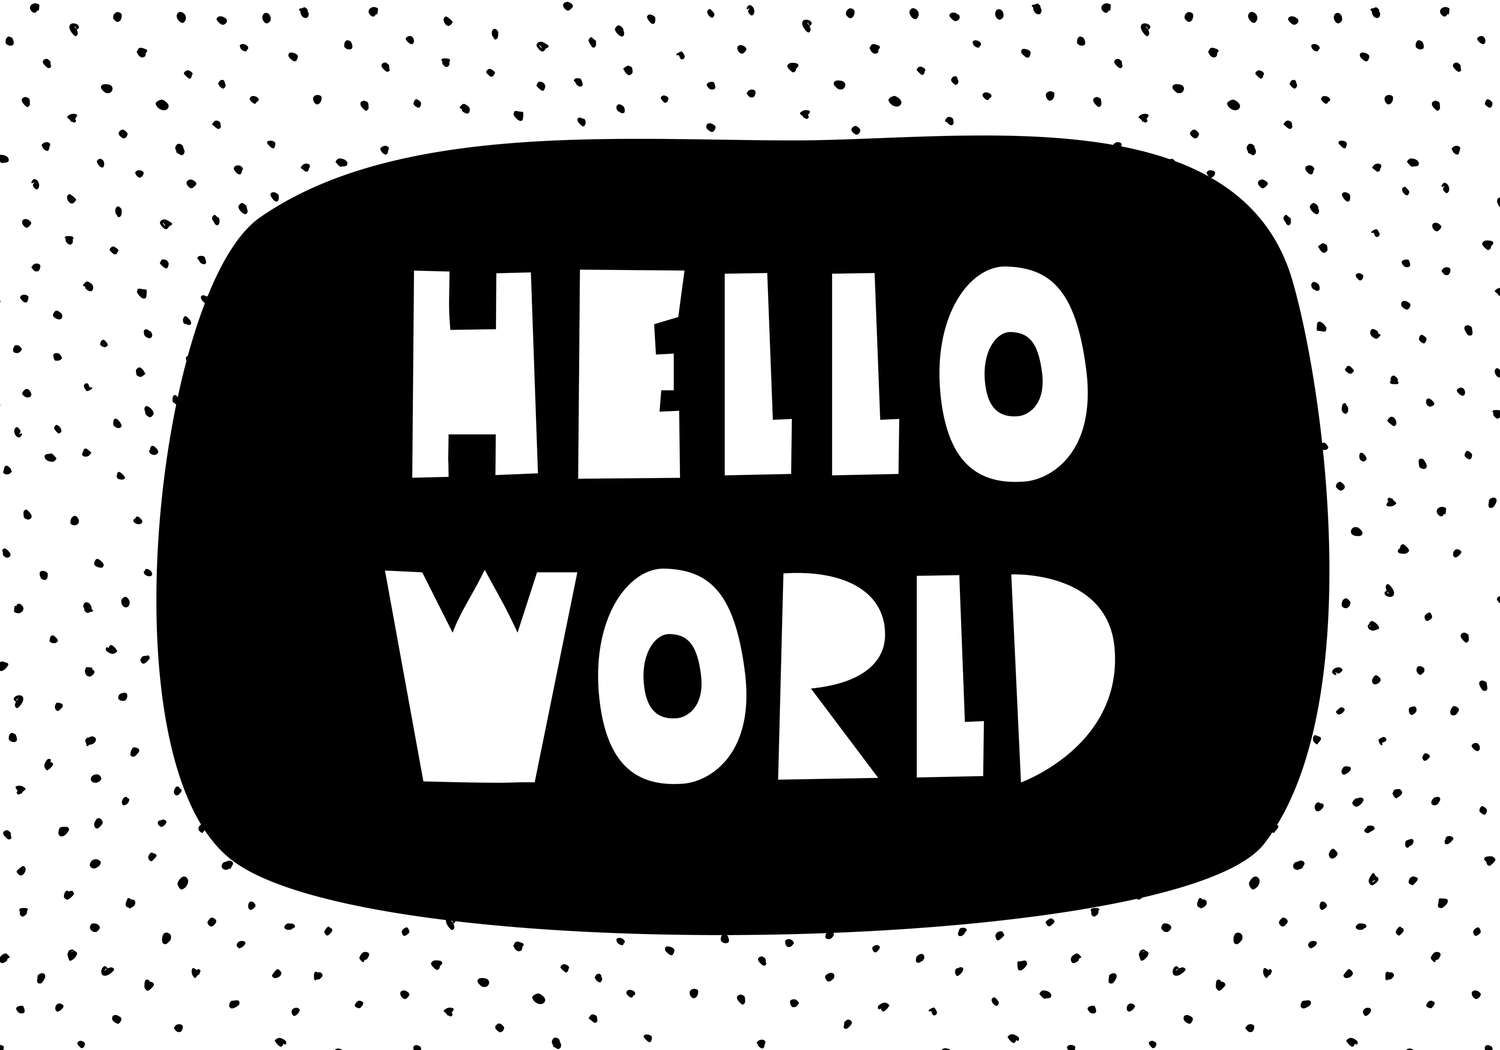             Fototapete fürs Kinderzimmer mit Schriftzug "Hello World" – Glattes & perlmutt-schimmerndes Vlies
        